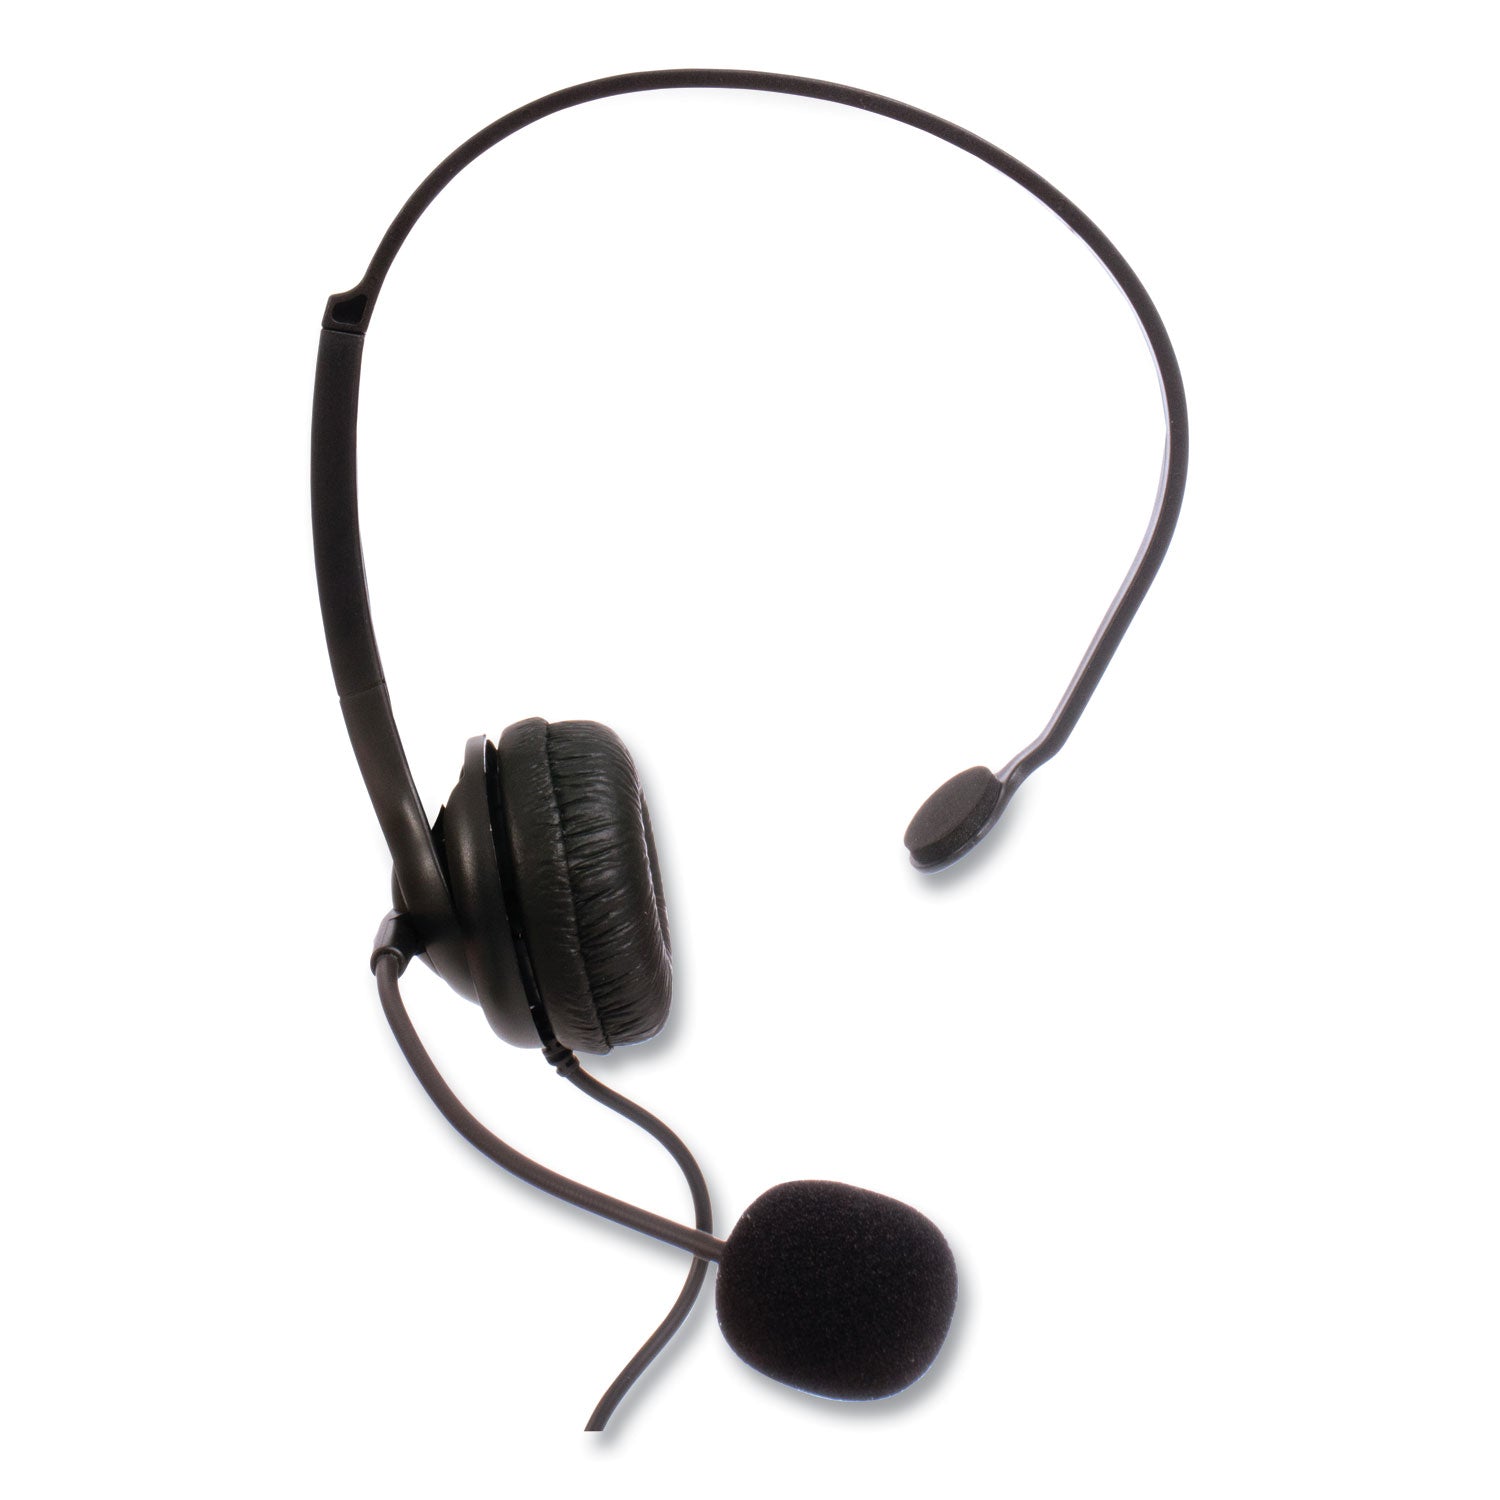 zum-zum350m-monaural-over-the-head-headset-black_sptzum350m - 4